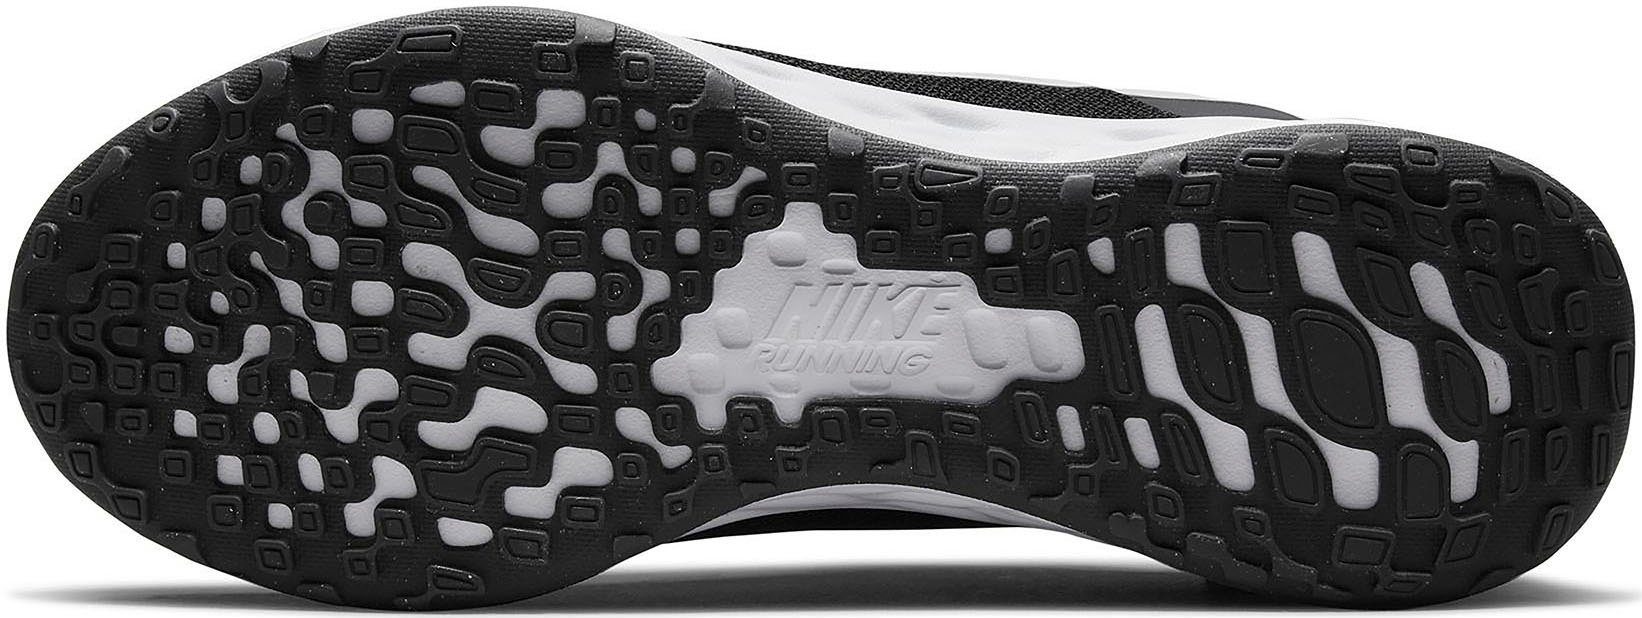 6 FLYEASE REVOLUTION Nike NEXT Laufschuh E BLACK-WHITE NATURE